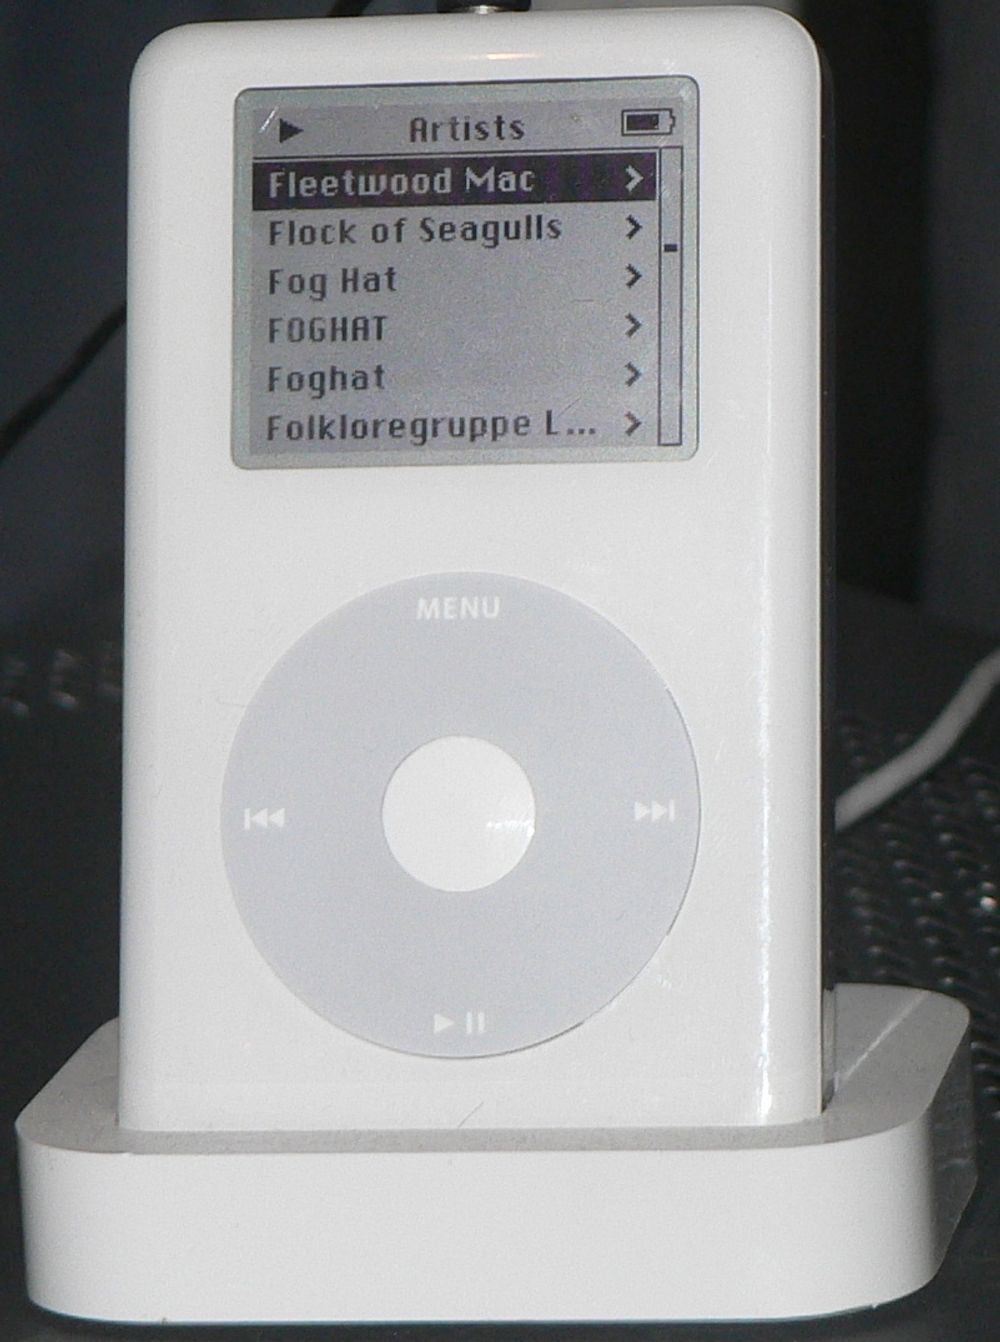 ORIGINALEN: Her står den originale iPod-en i sin dockingstasjon. 10,35 centimeter høy er den vesentlig lavere enn bygningskopien - mildt sagt.